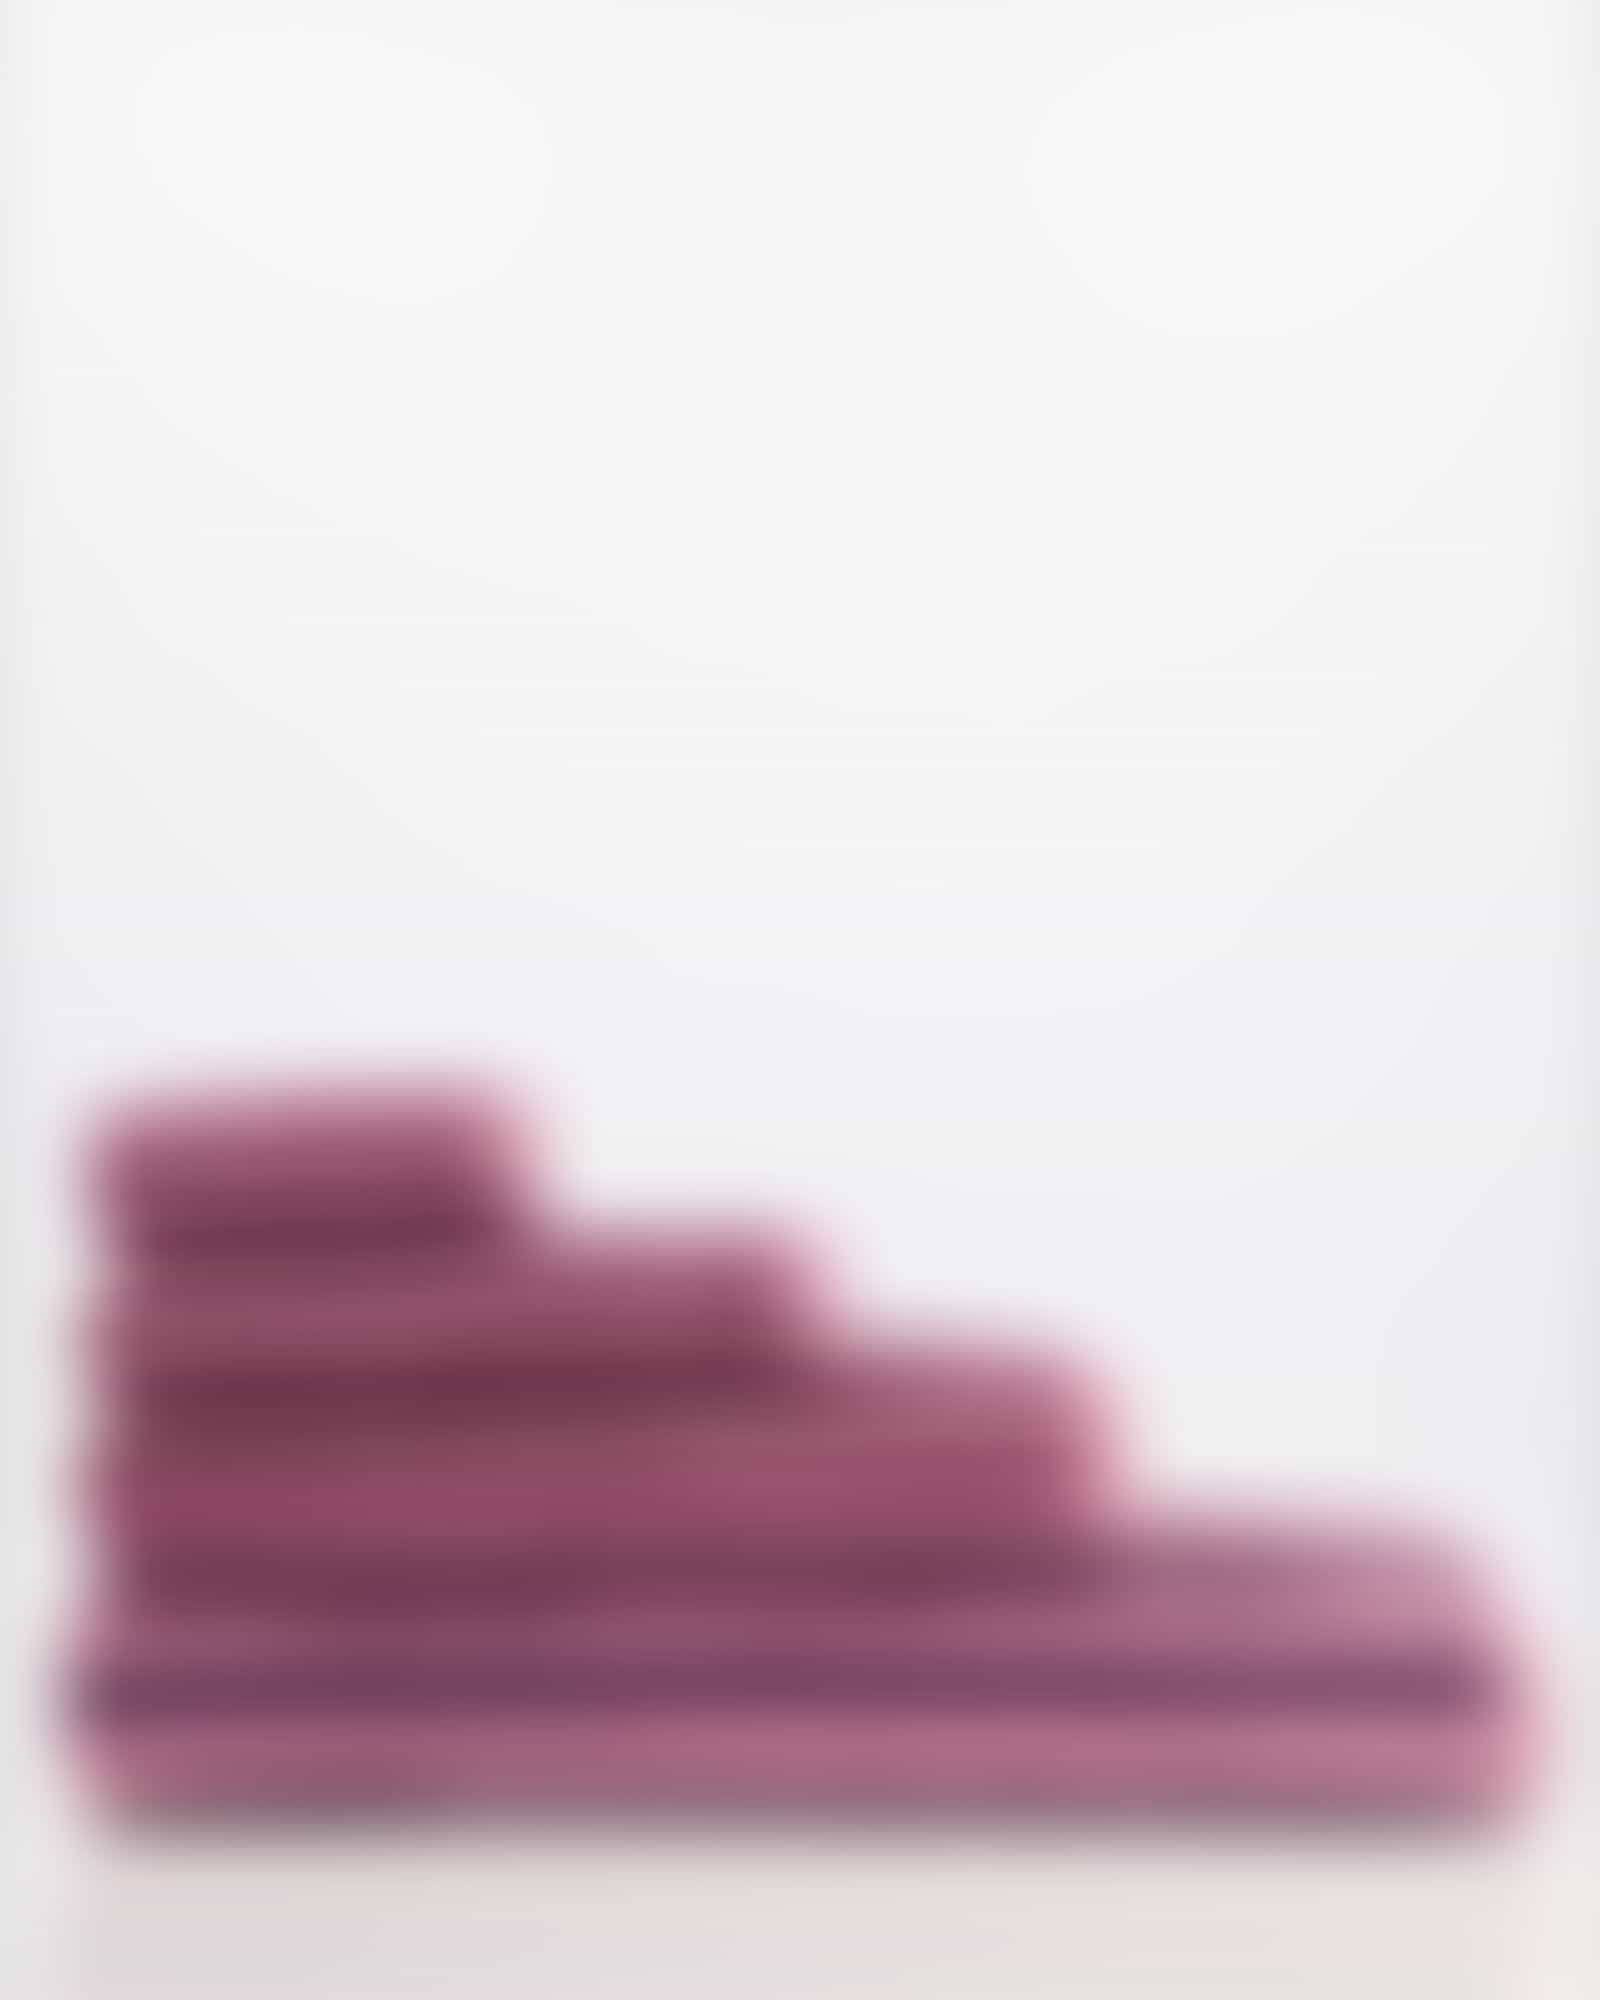 Cawö Handtücher Delight Streifen 6218 - Farbe: blush - 22